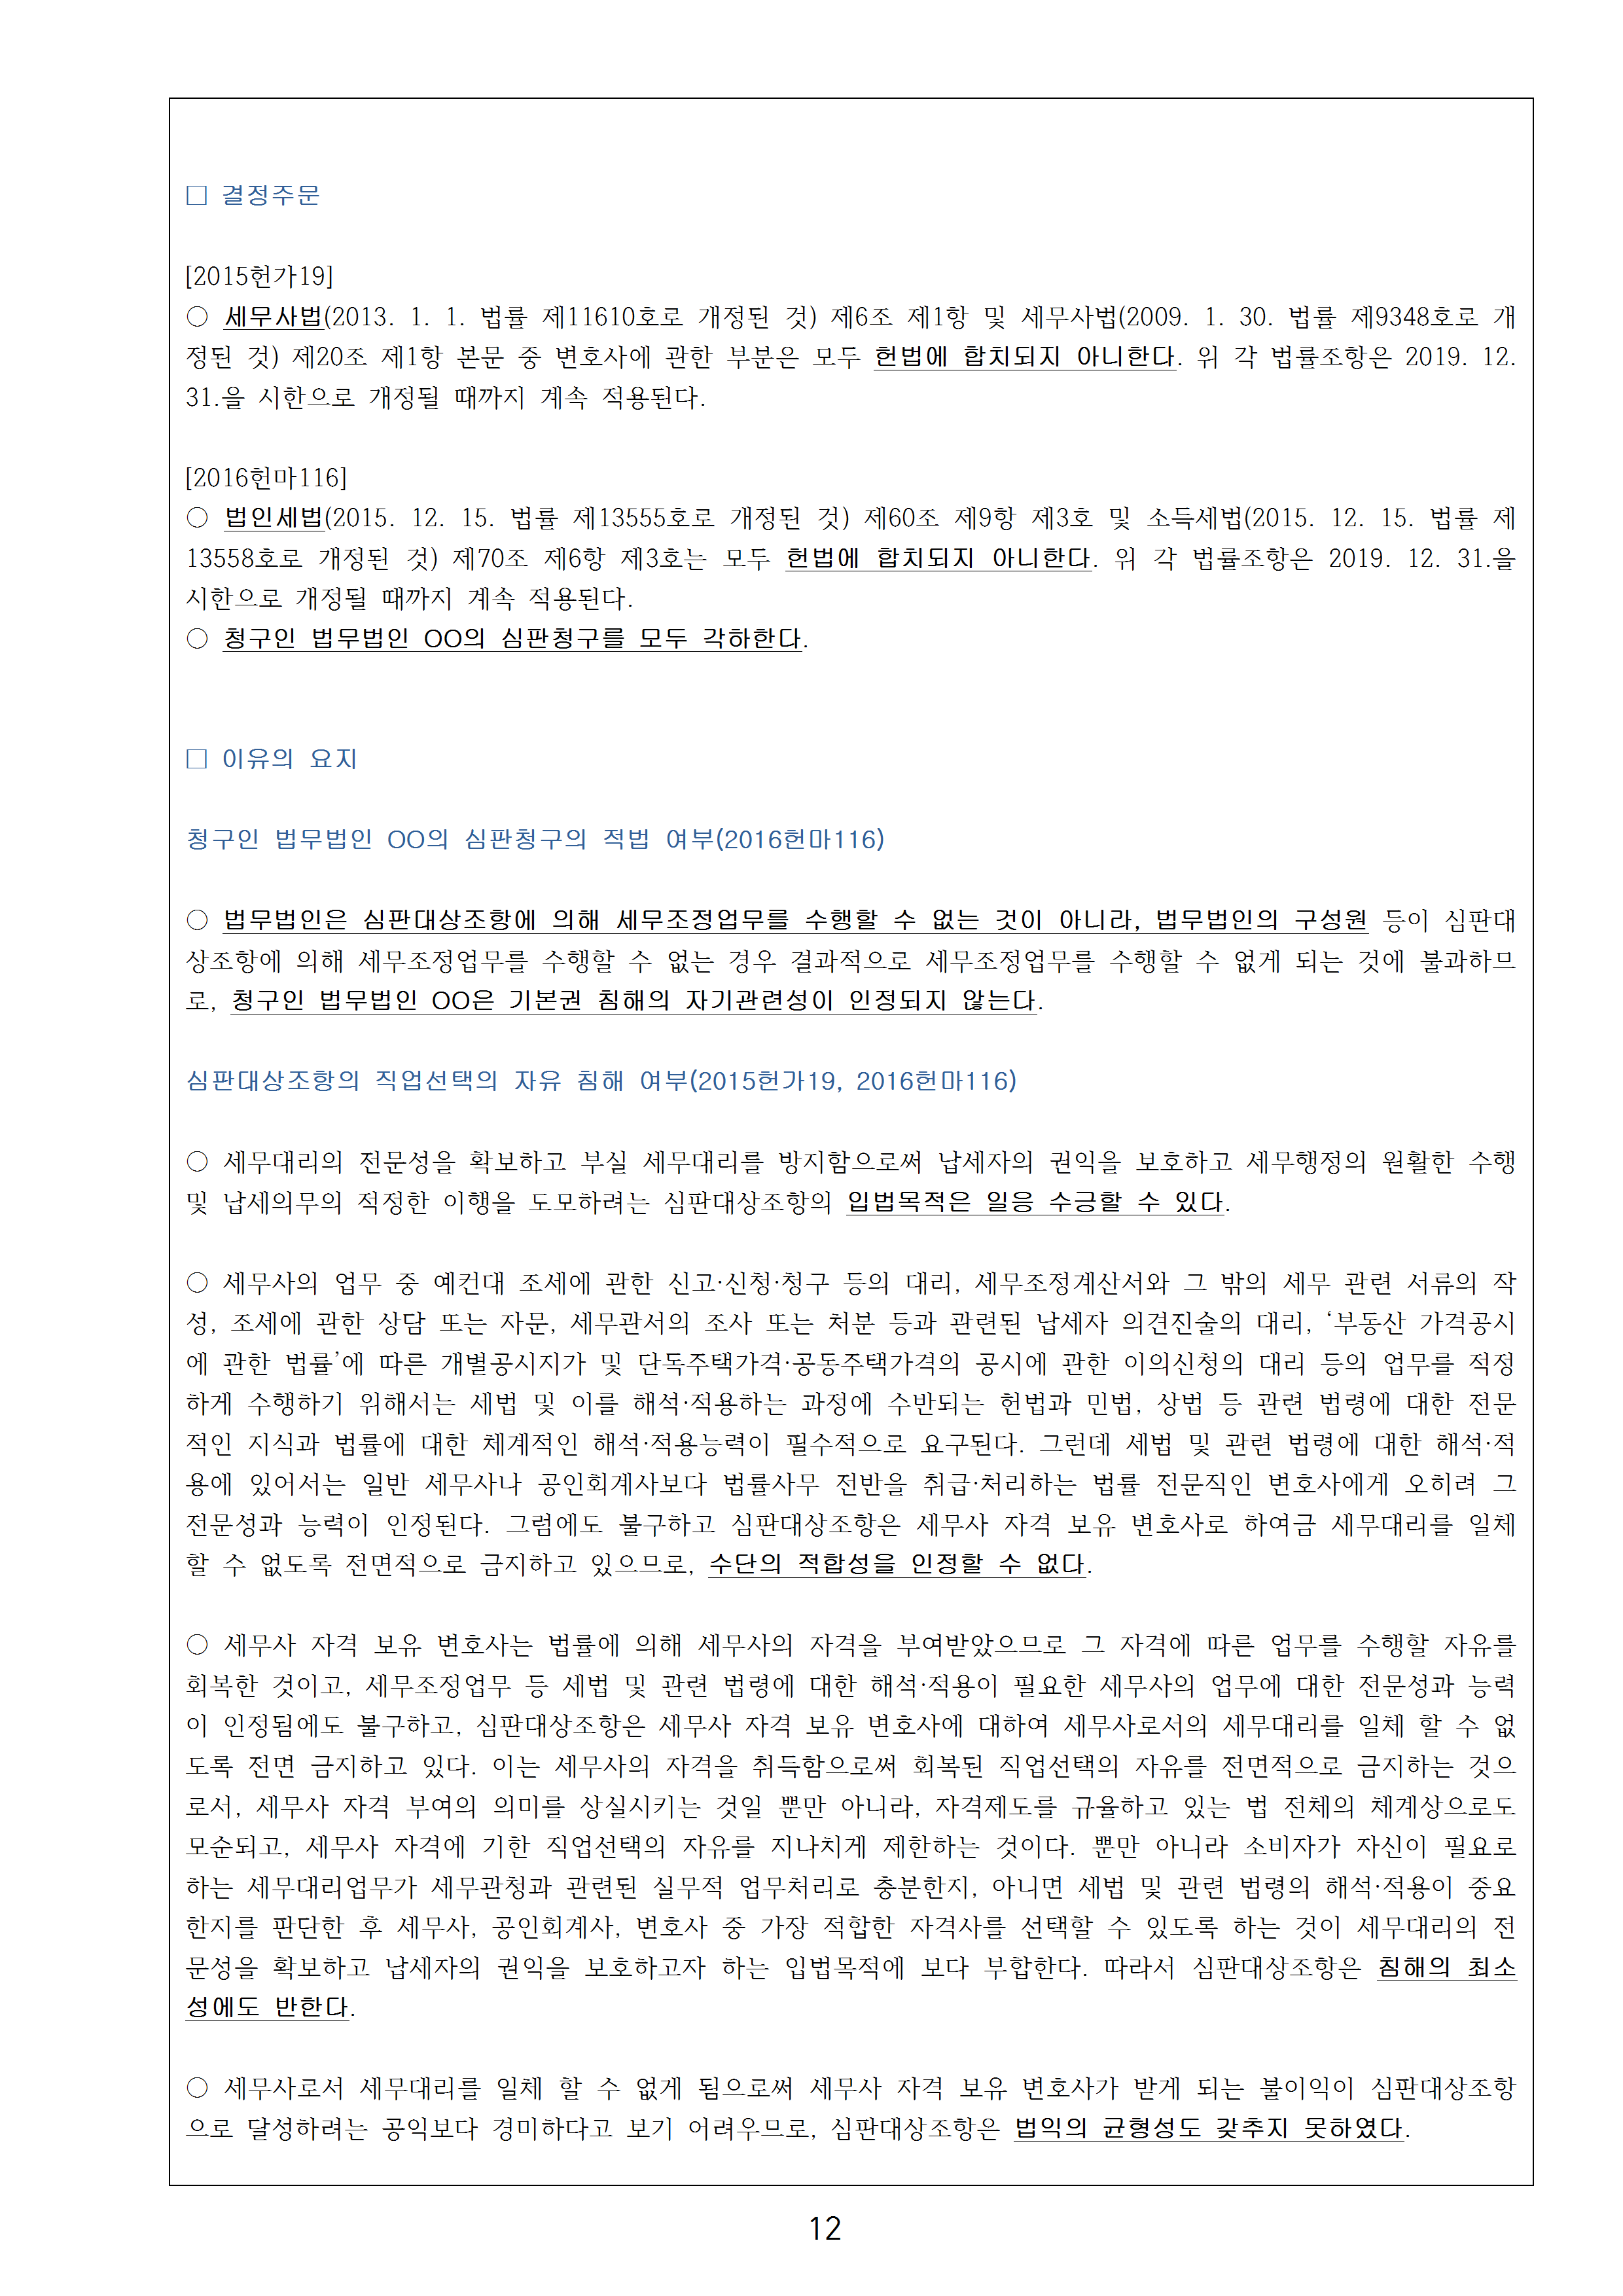 2018년 상반기 헌법재판소 최신판례 - 원데이헌법(49p)013.png